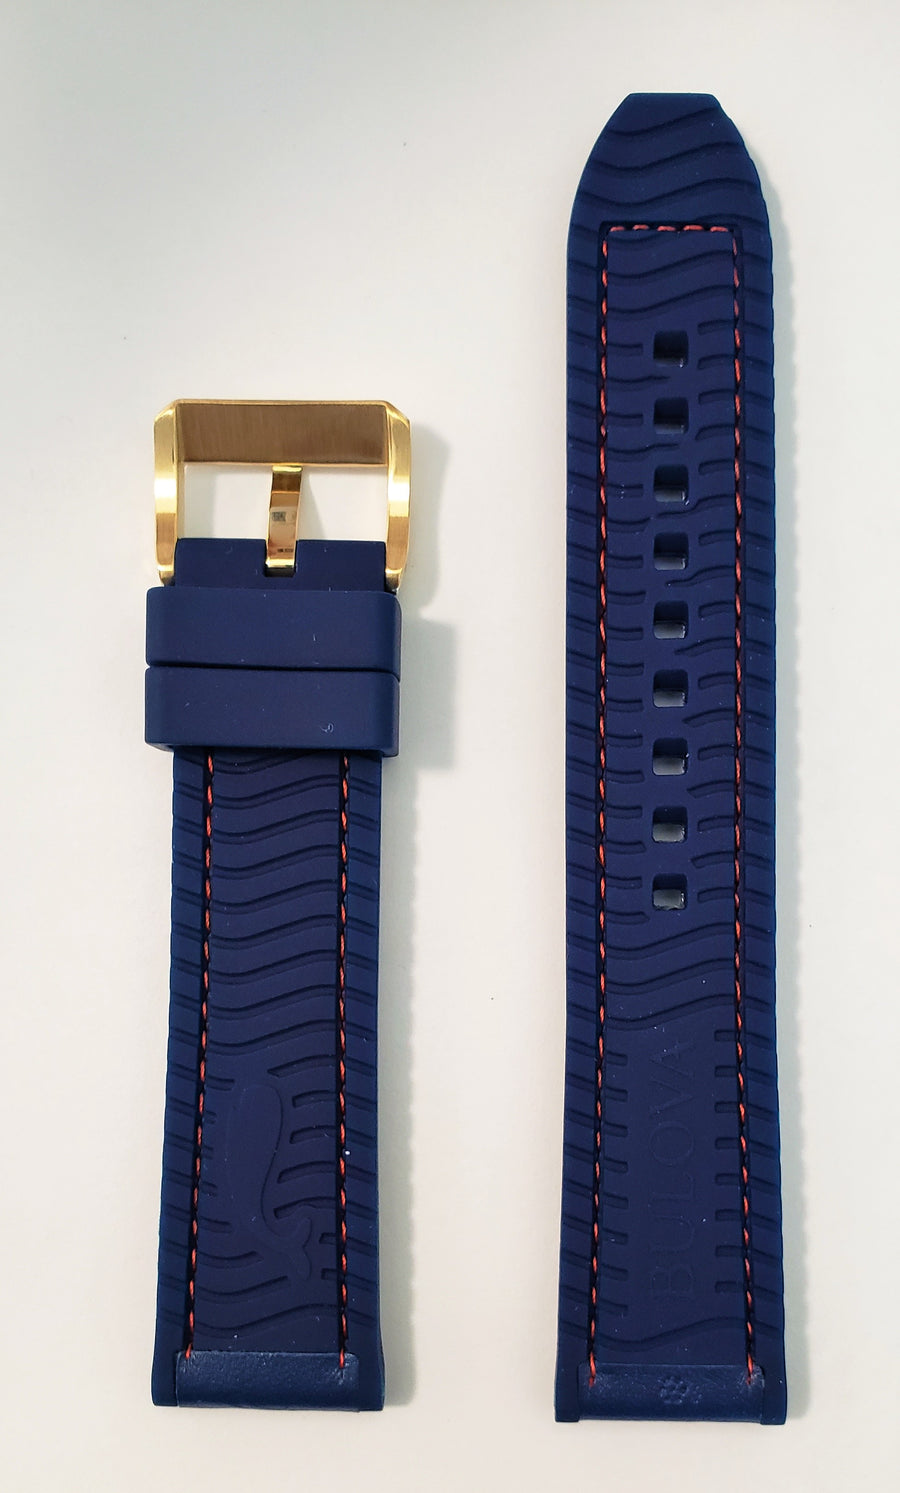 Bulova Marine Star 97B168 Blue Rubber 22mm Watch Band - WATCHBAND EXPERT